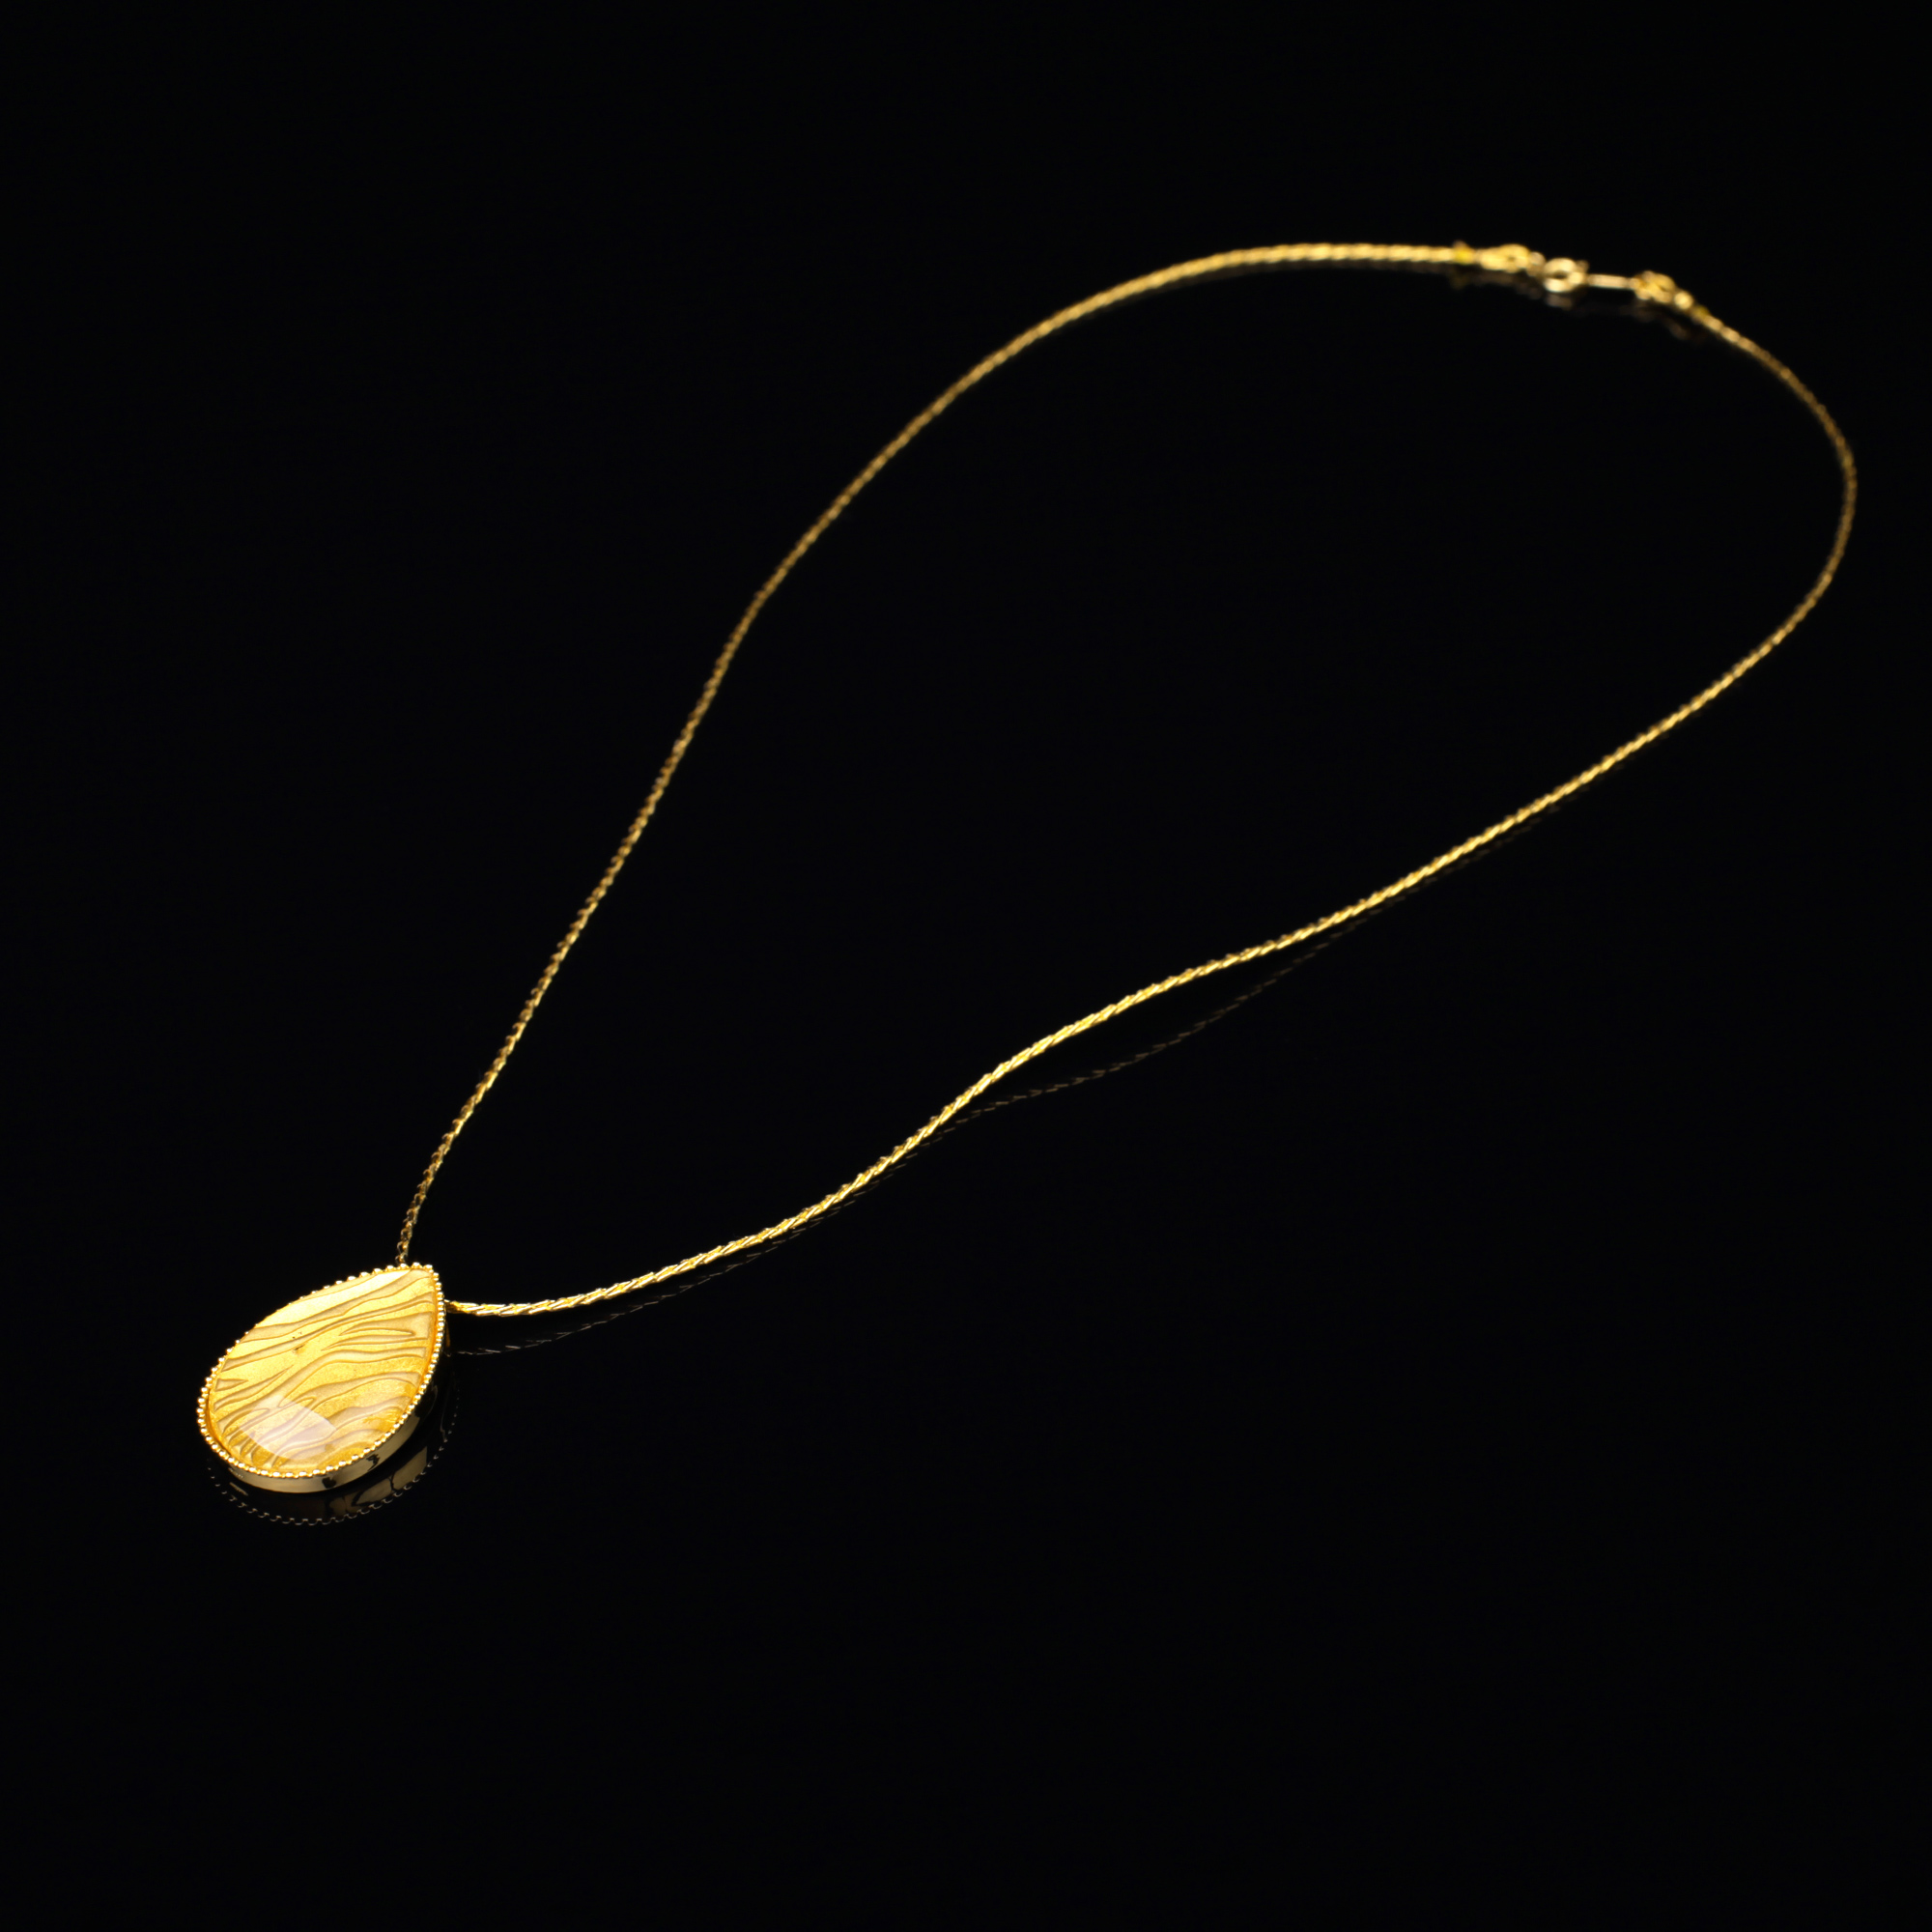 宝石クォーツ・水晶を使った和の彩　金銀糸ネックレス/ペンダントの商品写真です。型番：659-153 画像その1